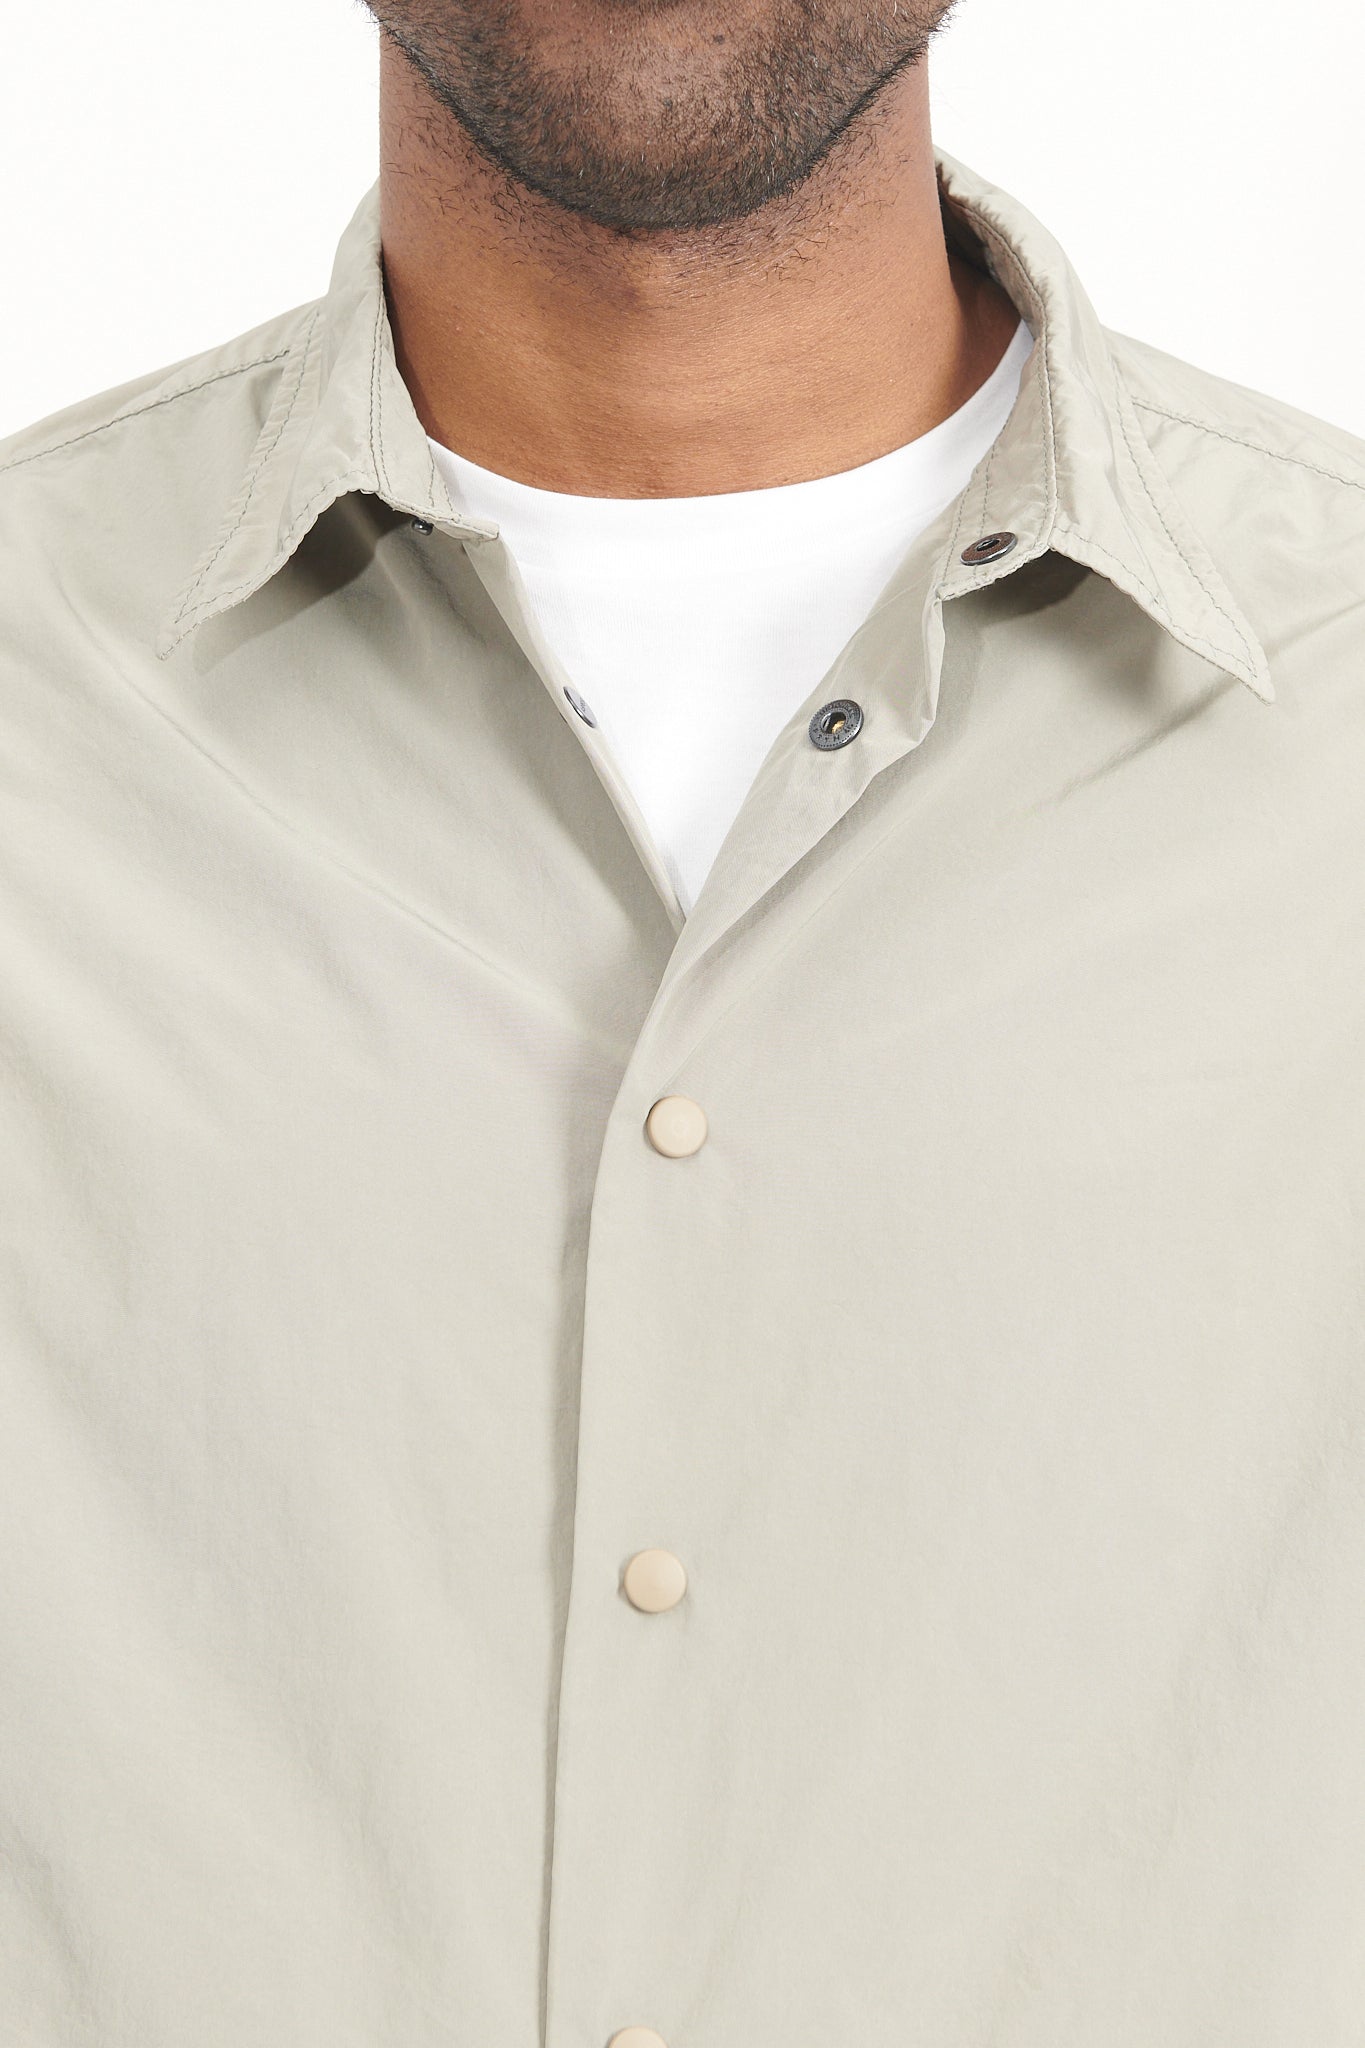 Nylon Cassel Over Shirt - Khaki